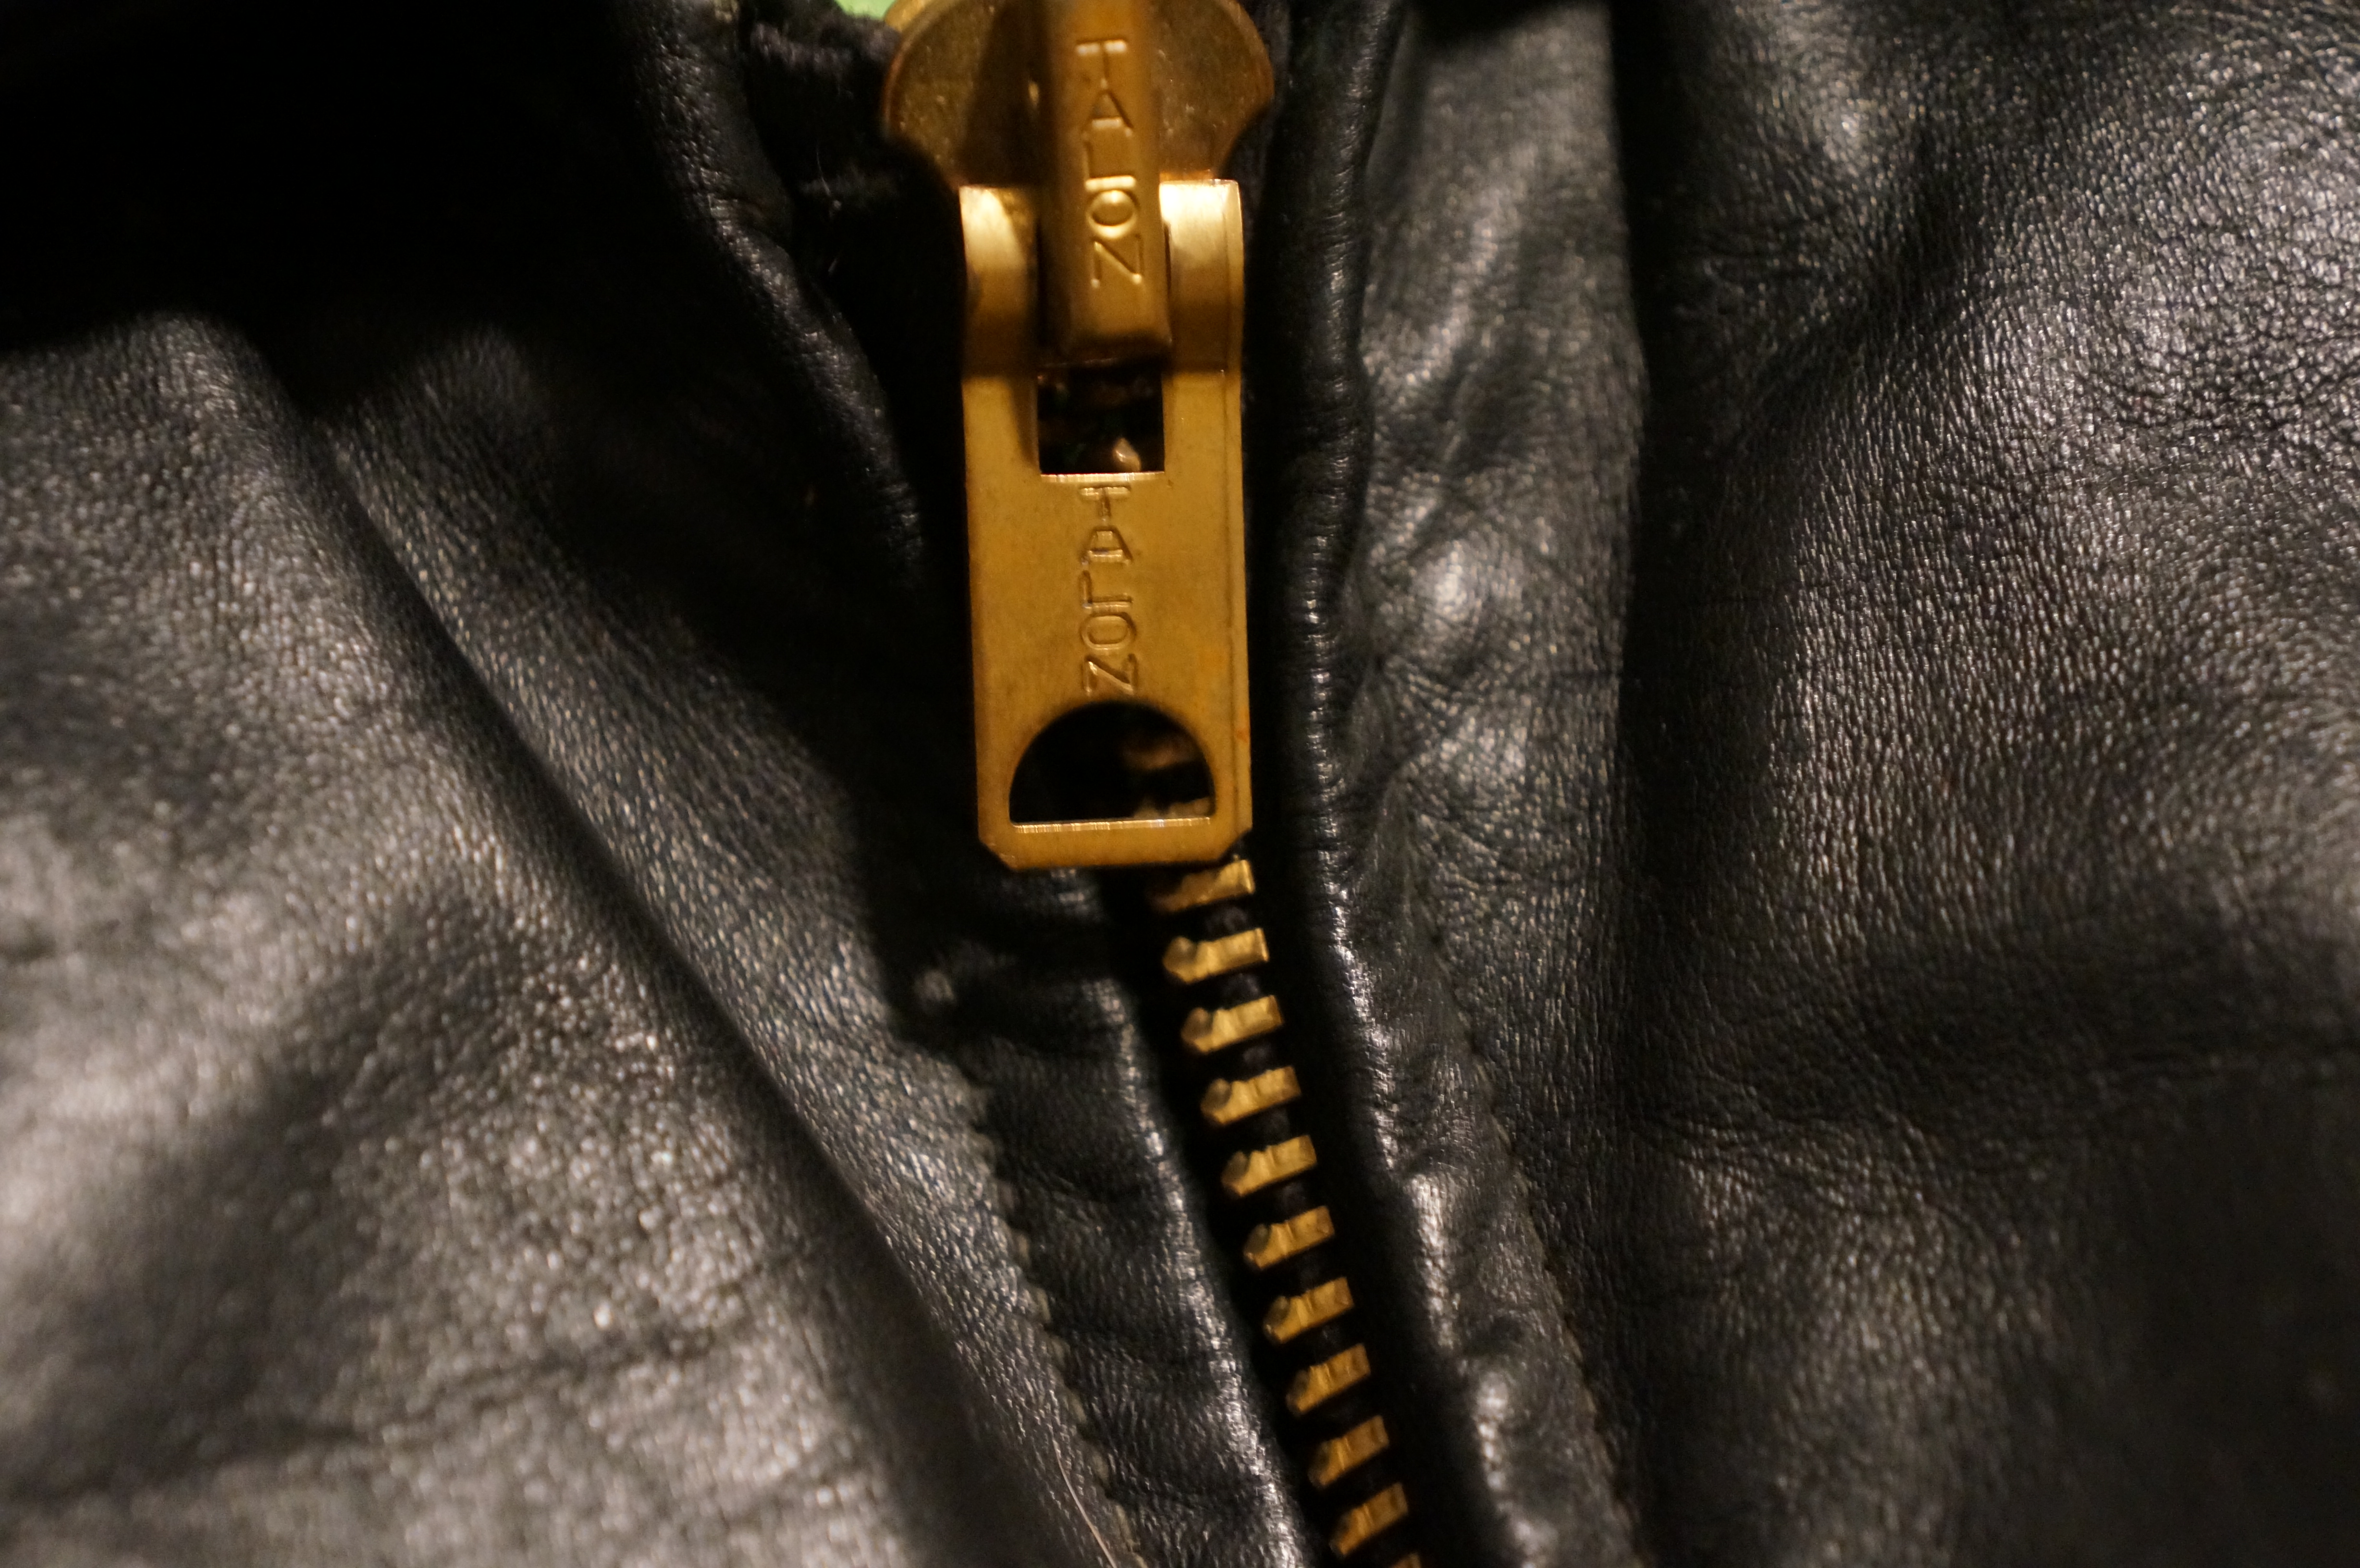 Dating Outerwear by zipper design